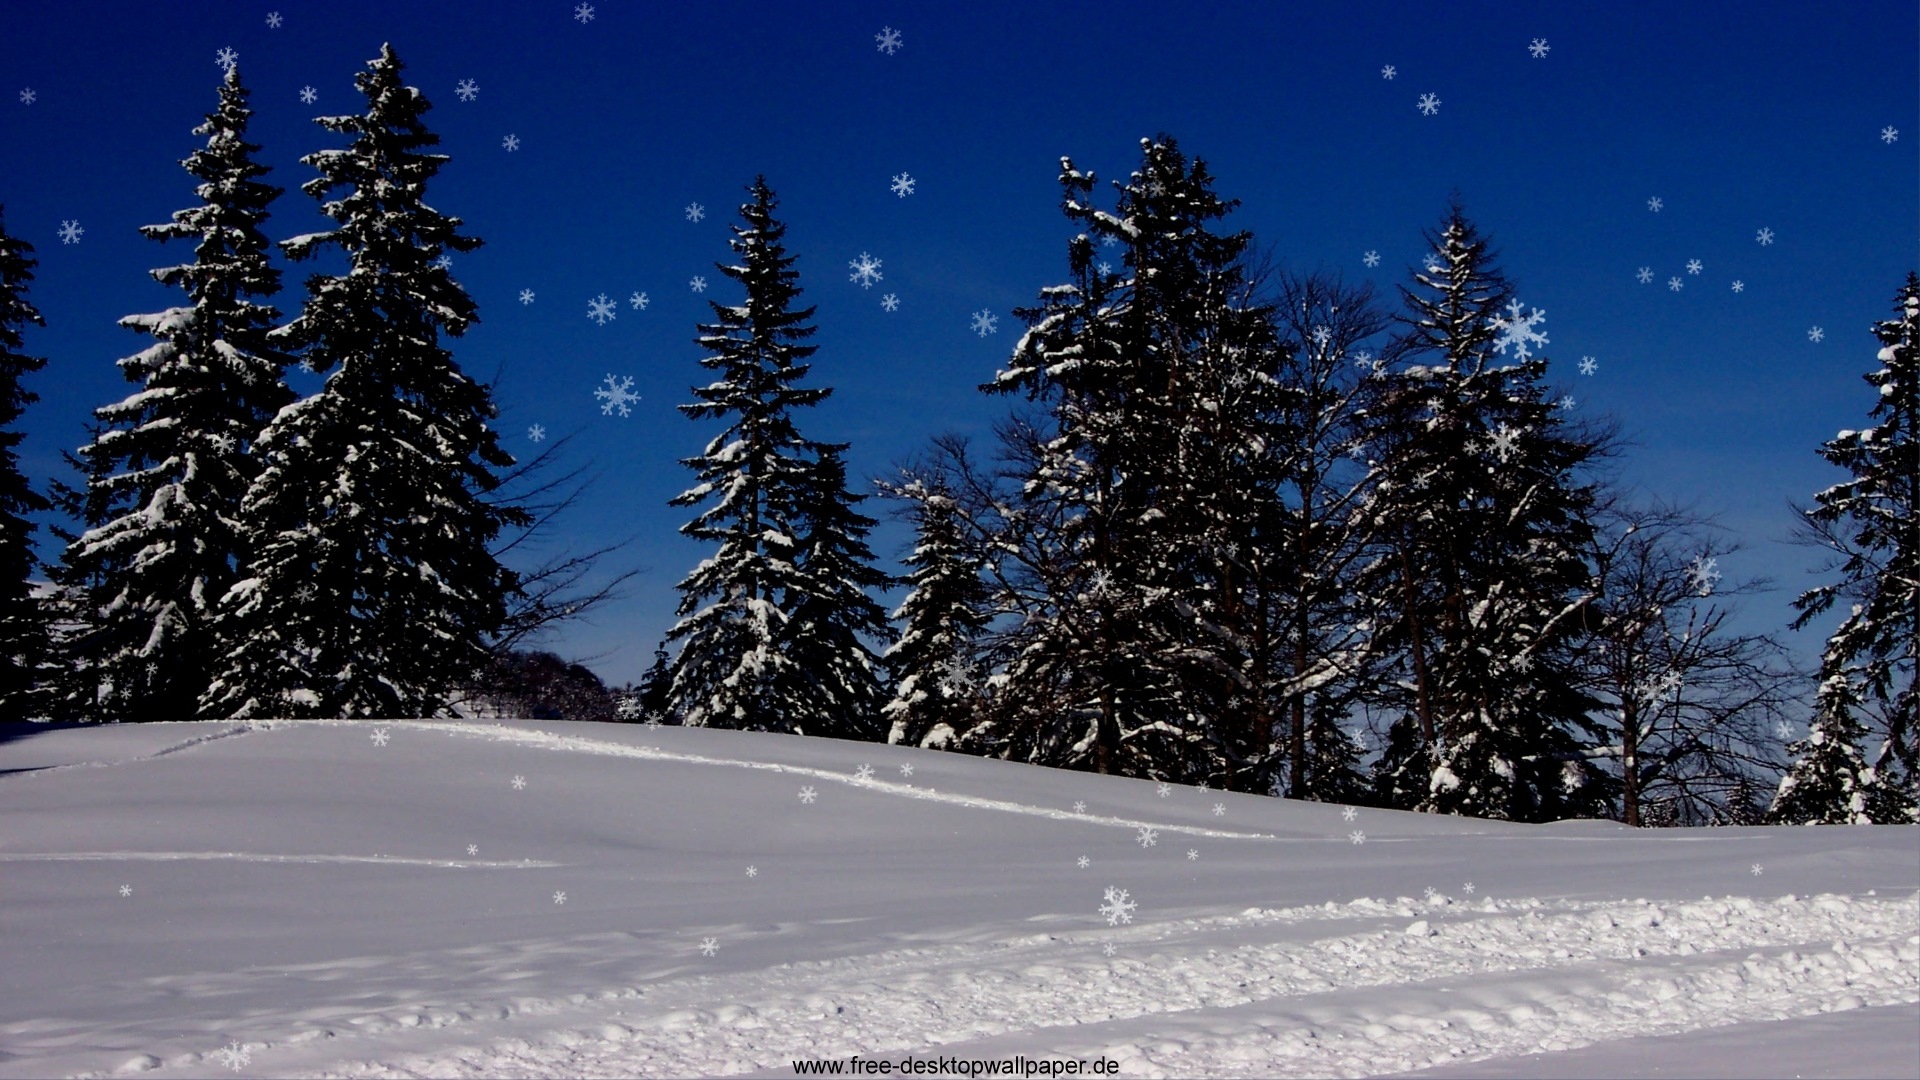 Nature Christmas Snow Widescreen Desktop Wallpaper